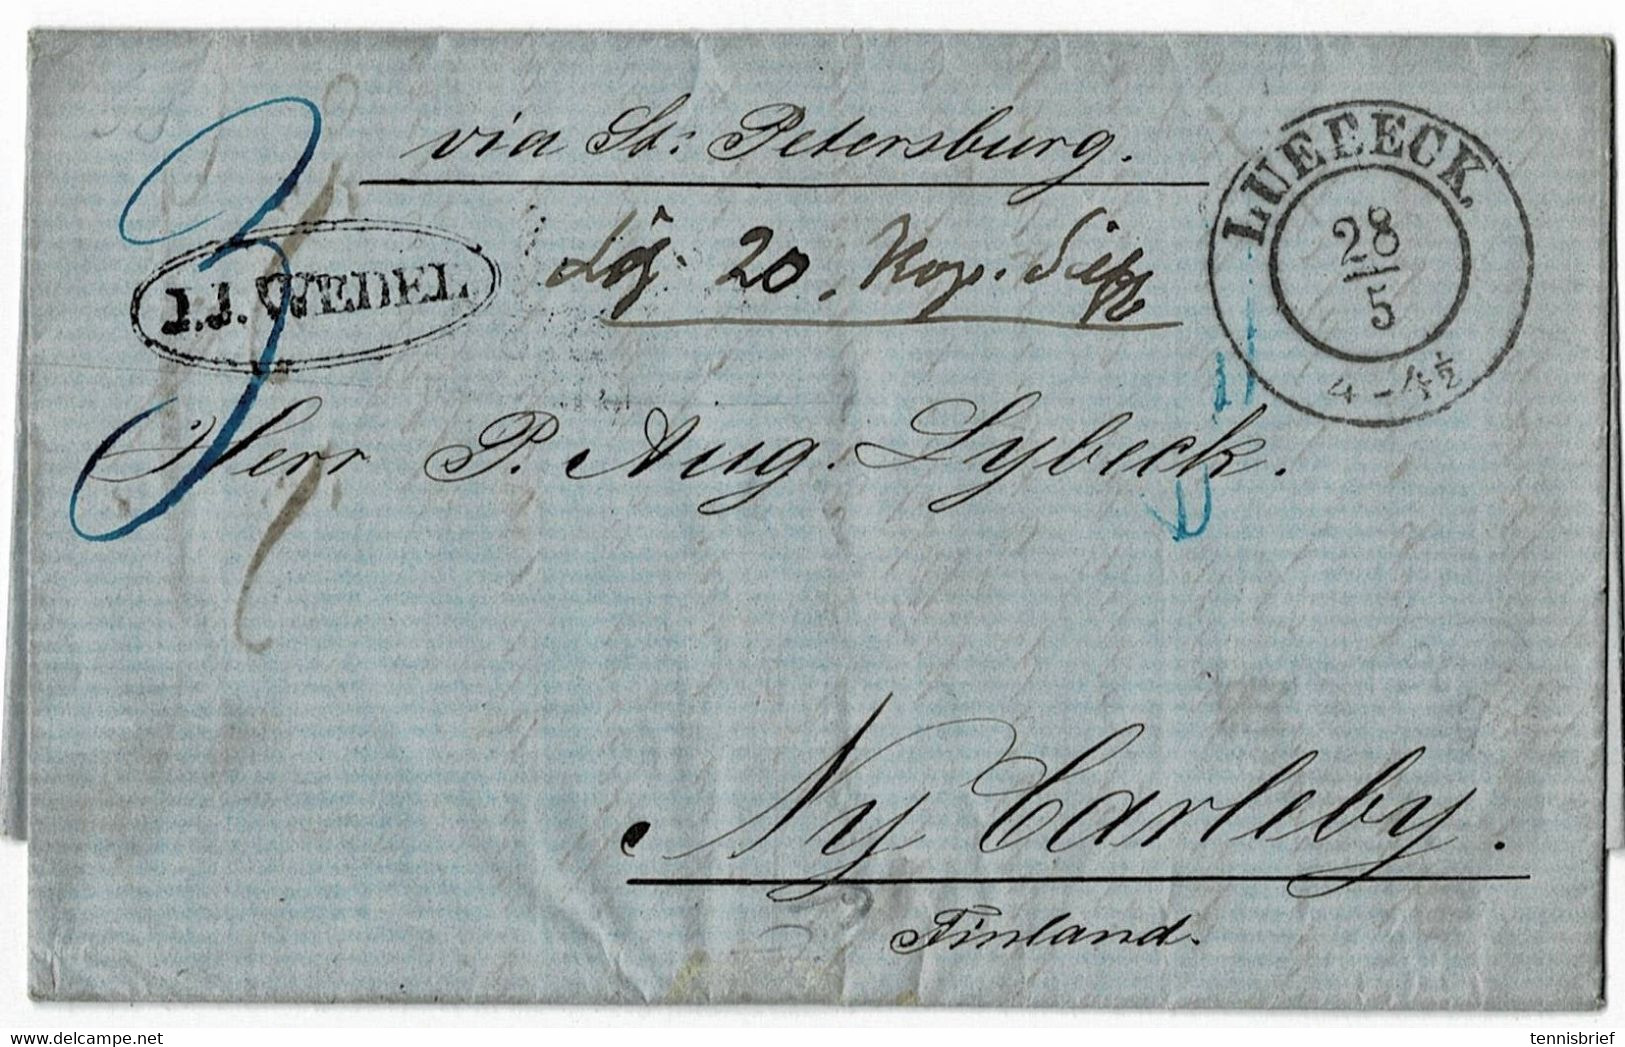 1858,  Lübeck Nach Finnland !  über St.Petersburg !  , A 5187 - Lubeck